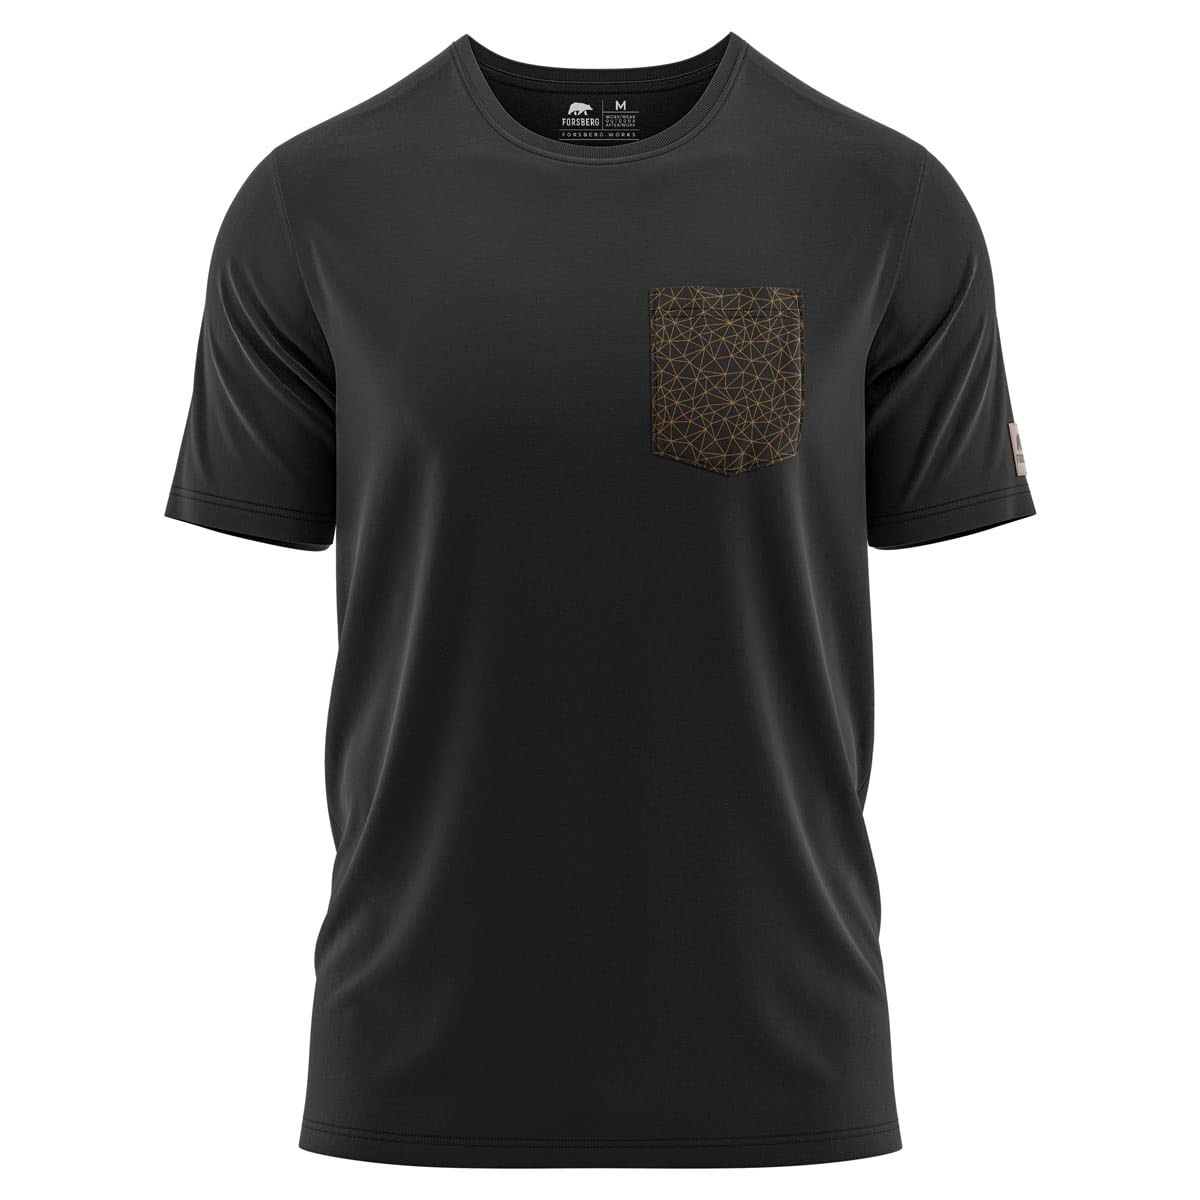 FORSBERG T-Shirt mit Brustlogo im Polygondesign, Farbe:schwarz/Bronze, Größe:3XL